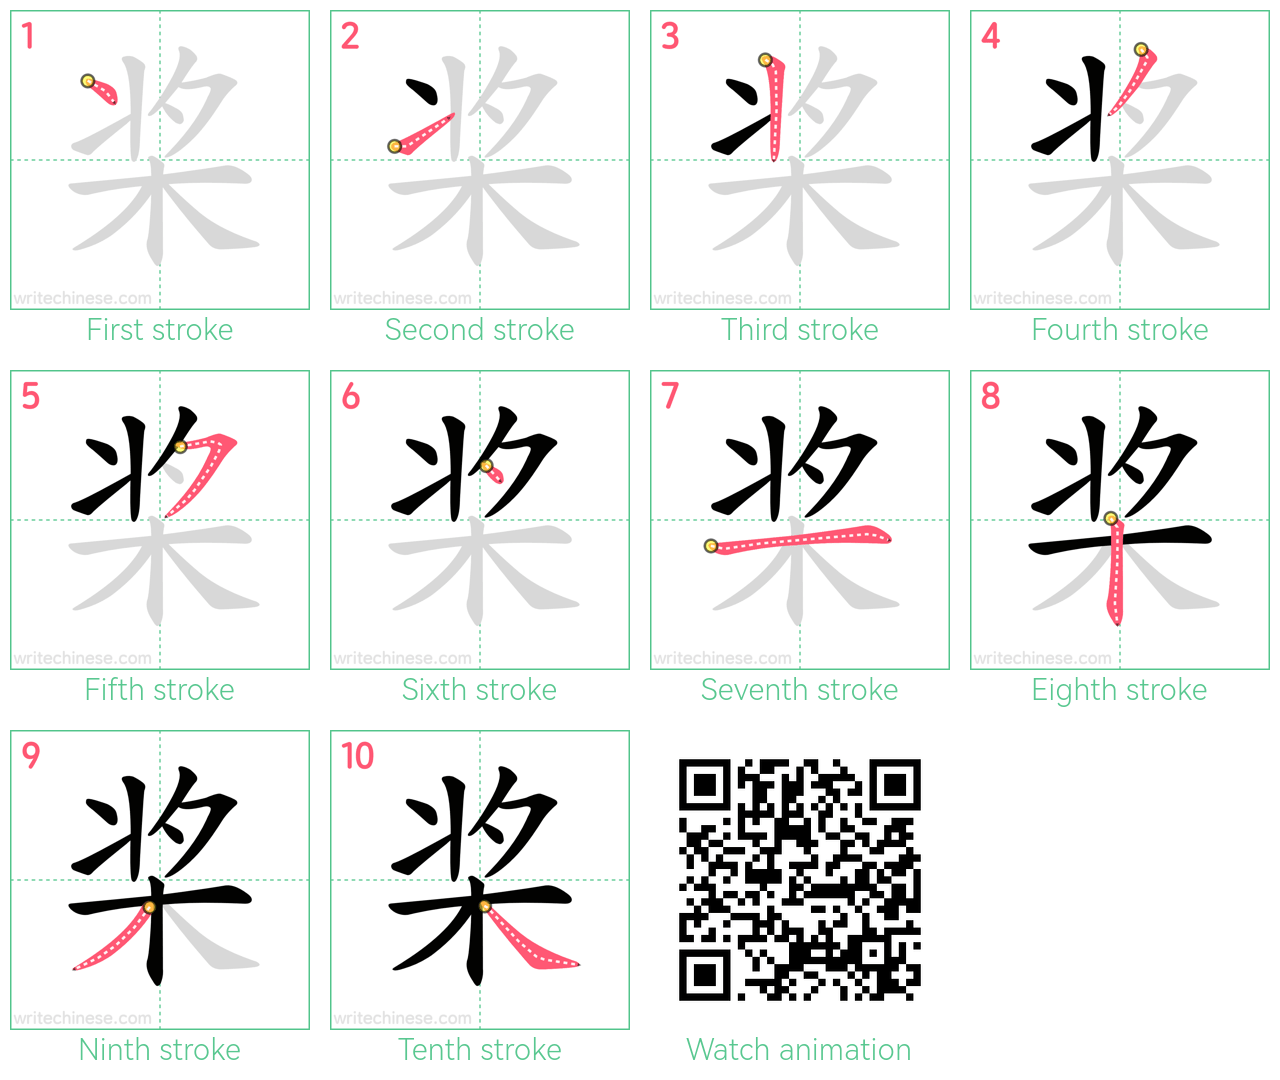 桨 step-by-step stroke order diagrams